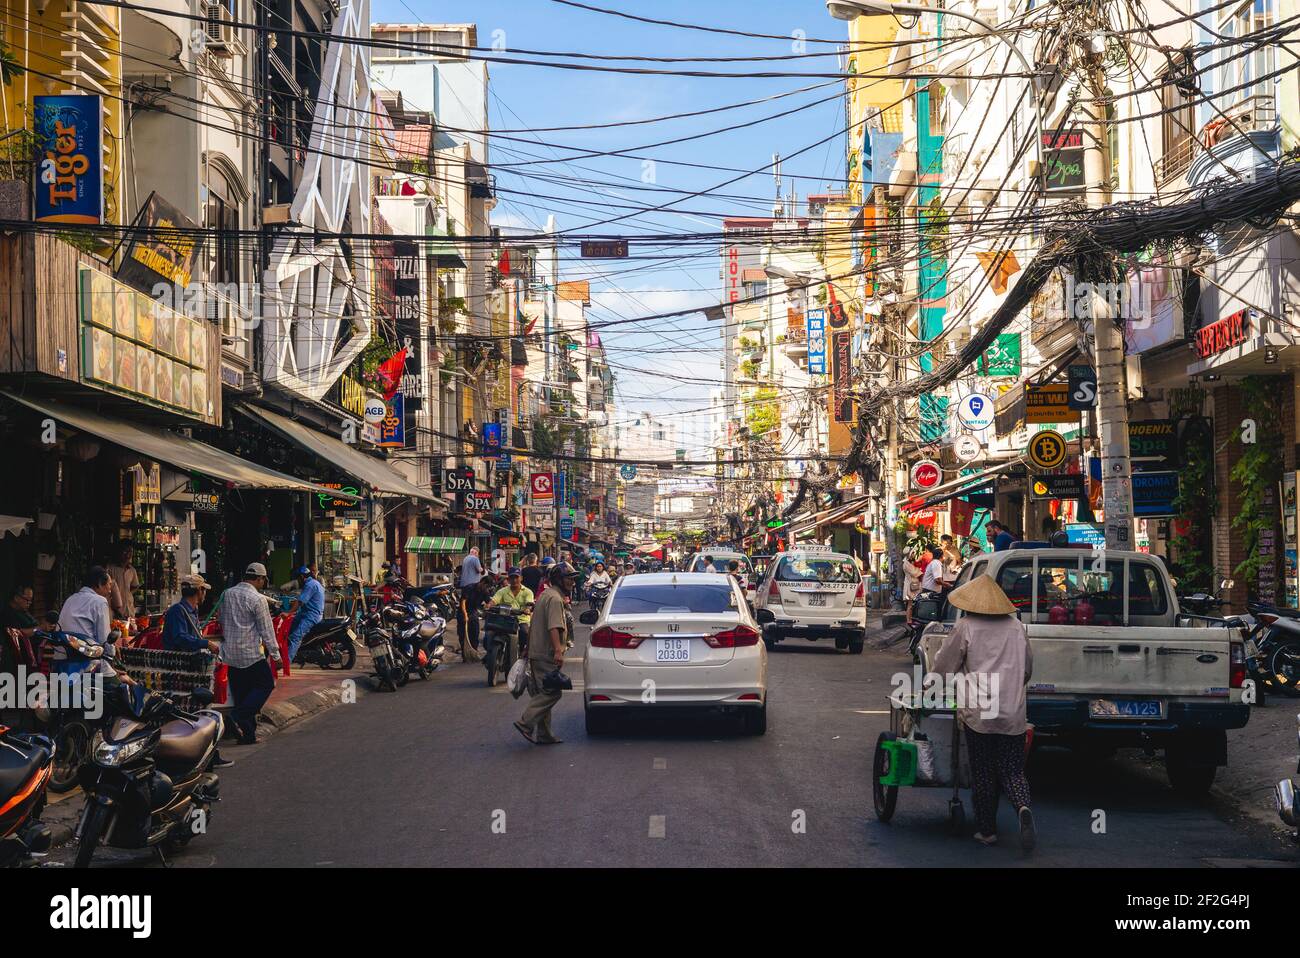 1 de enero de 2017: Calle Pham Ngu Lao en la ciudad ho chi minh, Vietnam. Fue nombrado en honor de un héroe nacional, ahora se conoce como el distrito de mochileros o Foto de stock